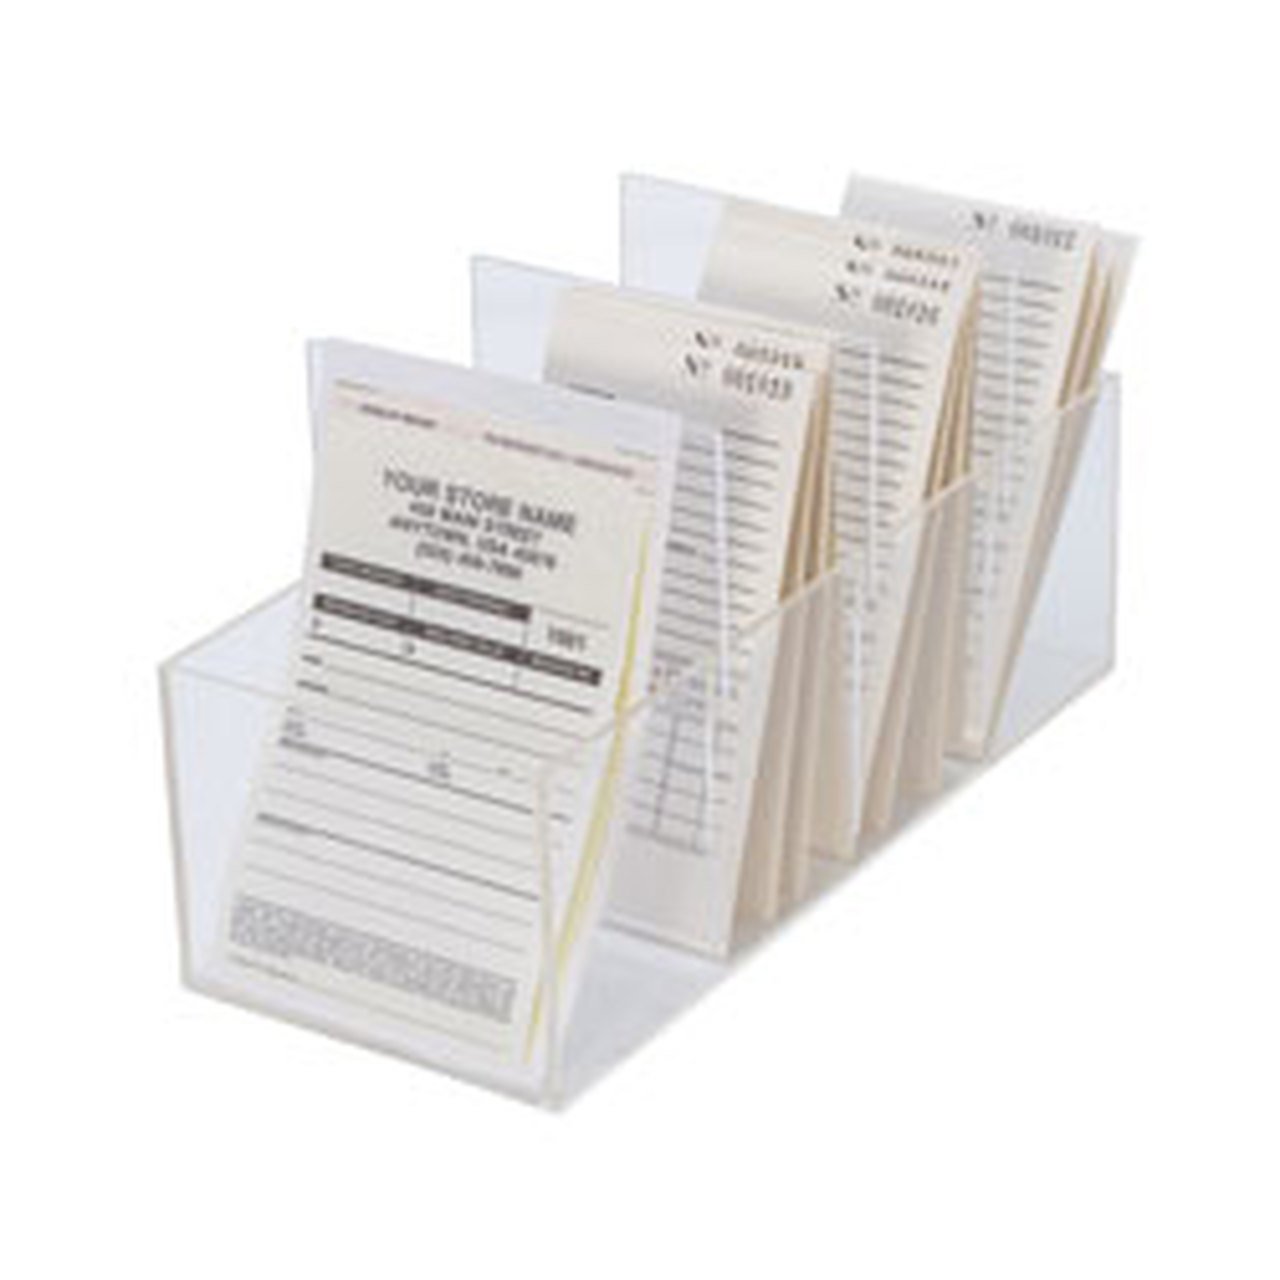 Tags, Labels & Repair Job Envelopes